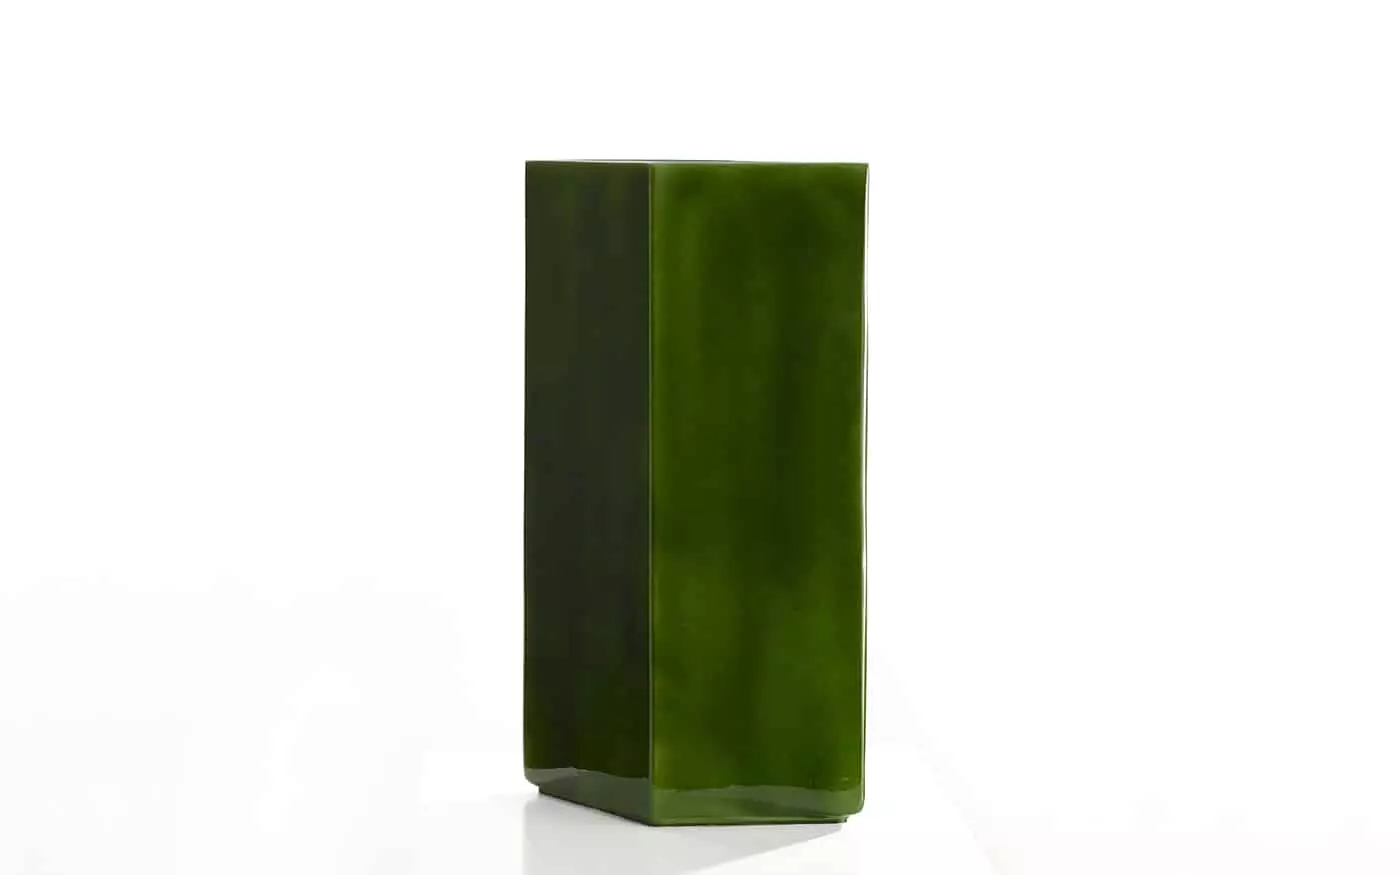 Vase Losange 84 green - Ronan & Erwan Bouroullec - Coffee table - Galerie kreo